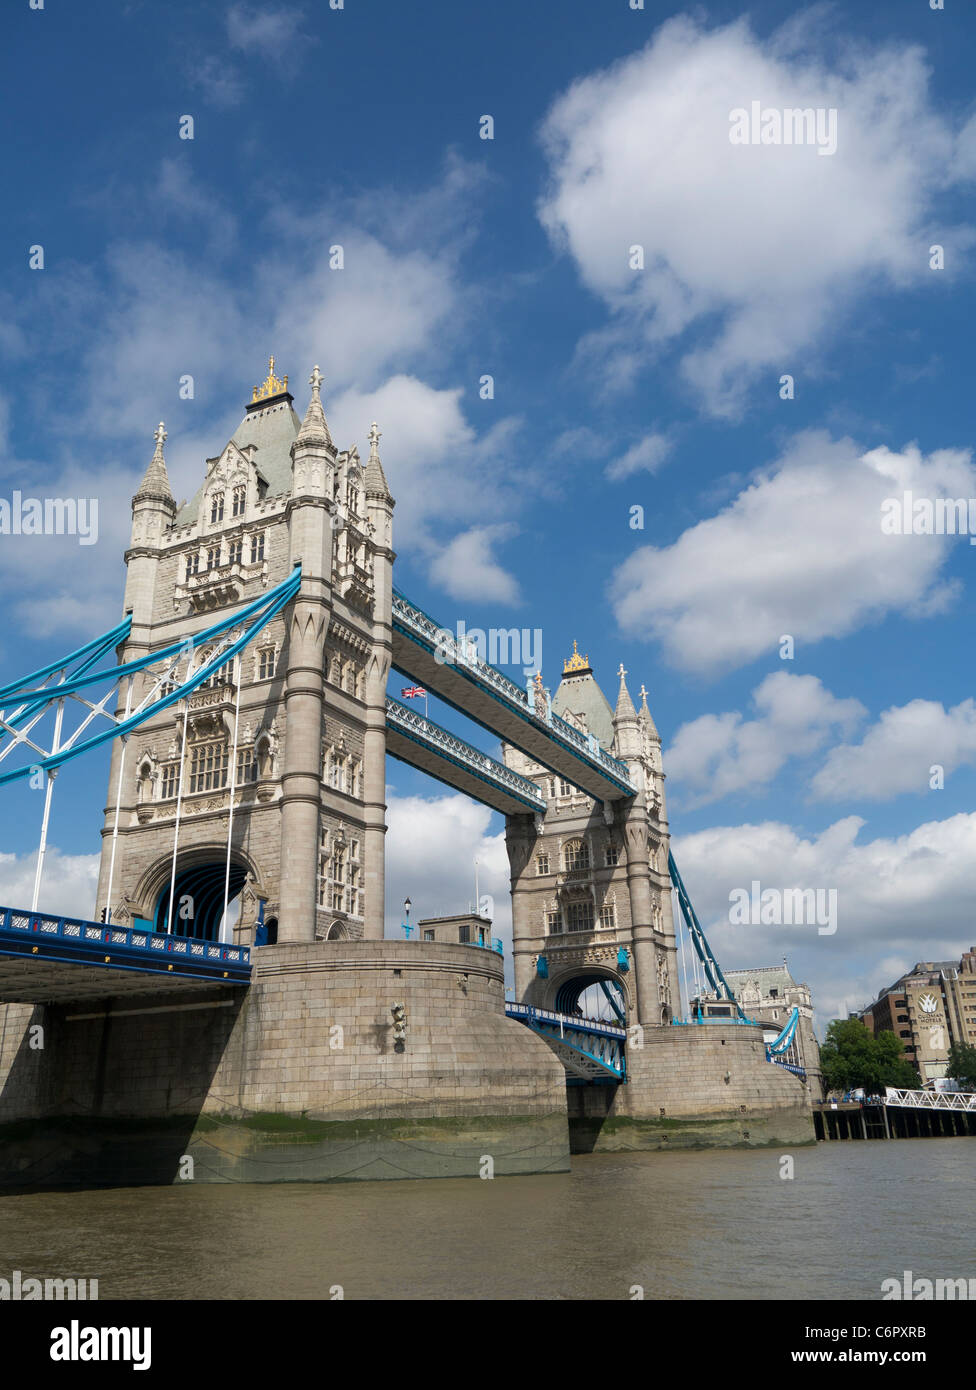 Tower Bridge, attraction touristique historique, Tamise London England UK. Banque D'Images